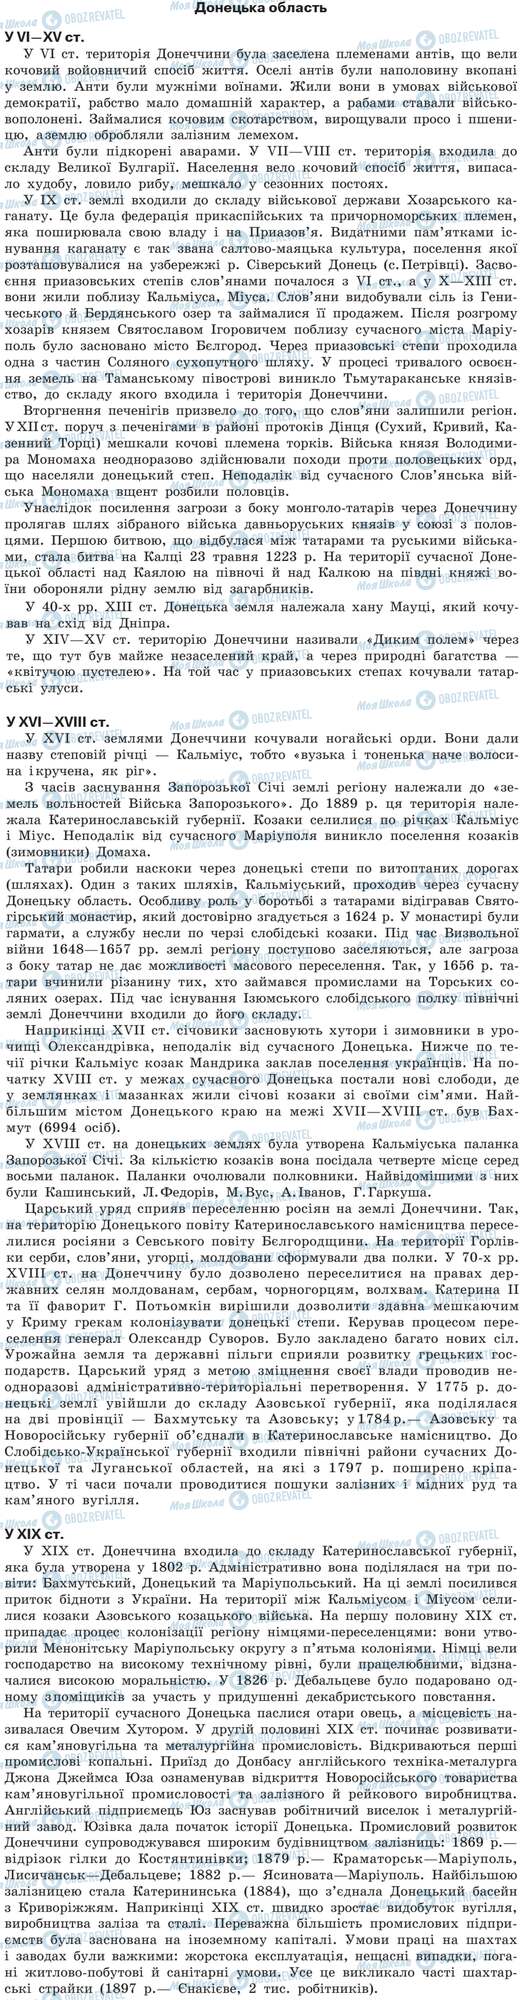 ДПА История Украины 9 класс страница Донецька область